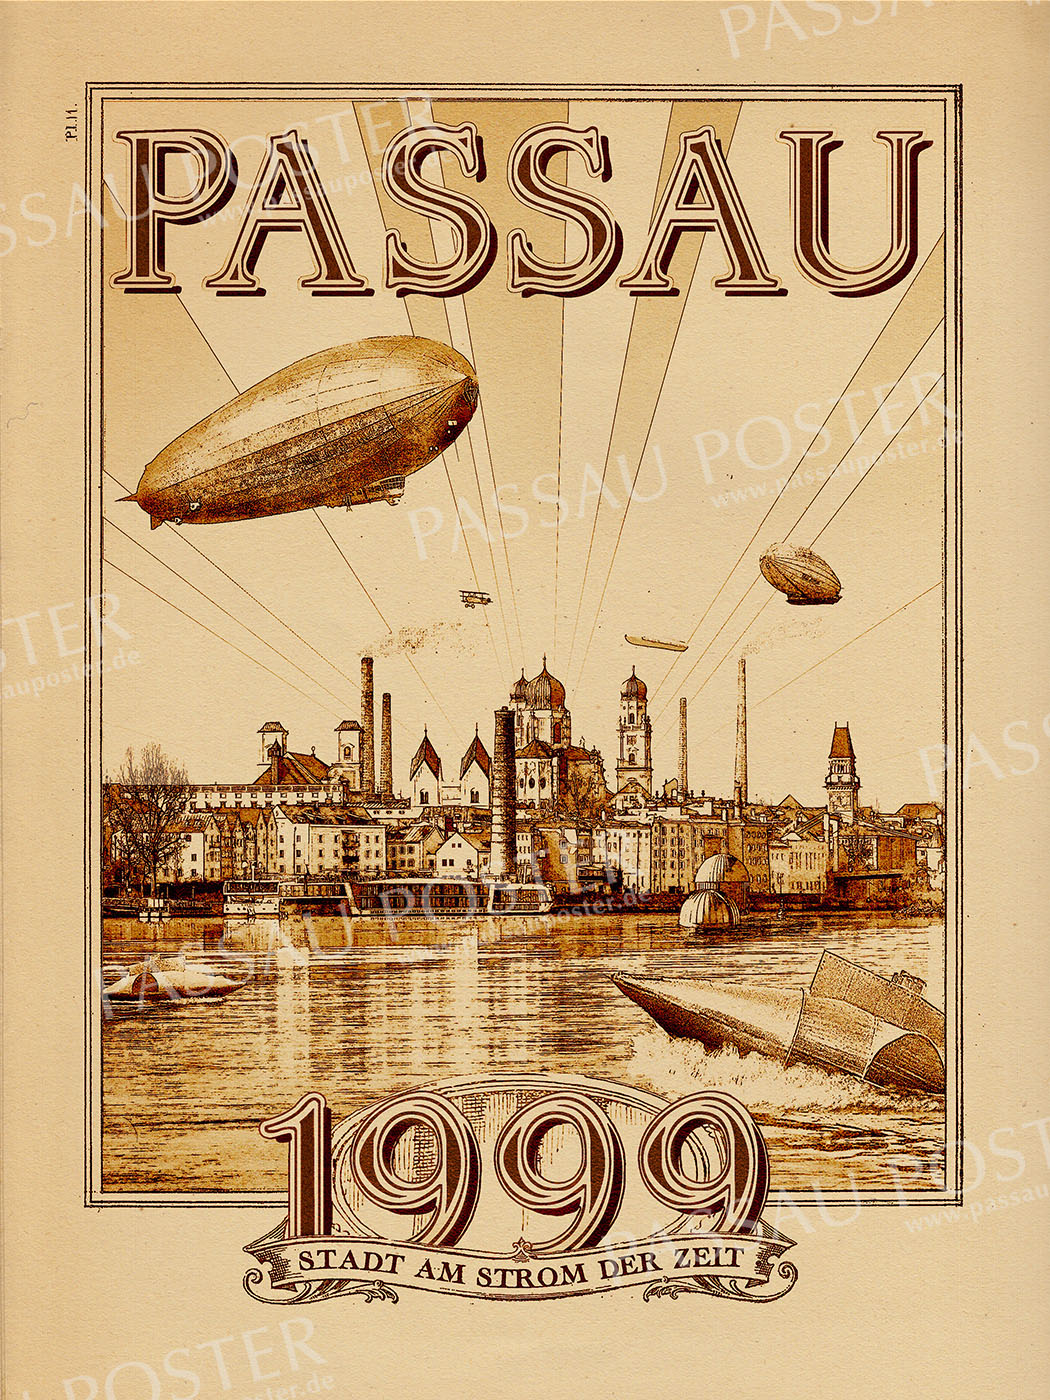 Passau Poster - Vergangene Zukunft